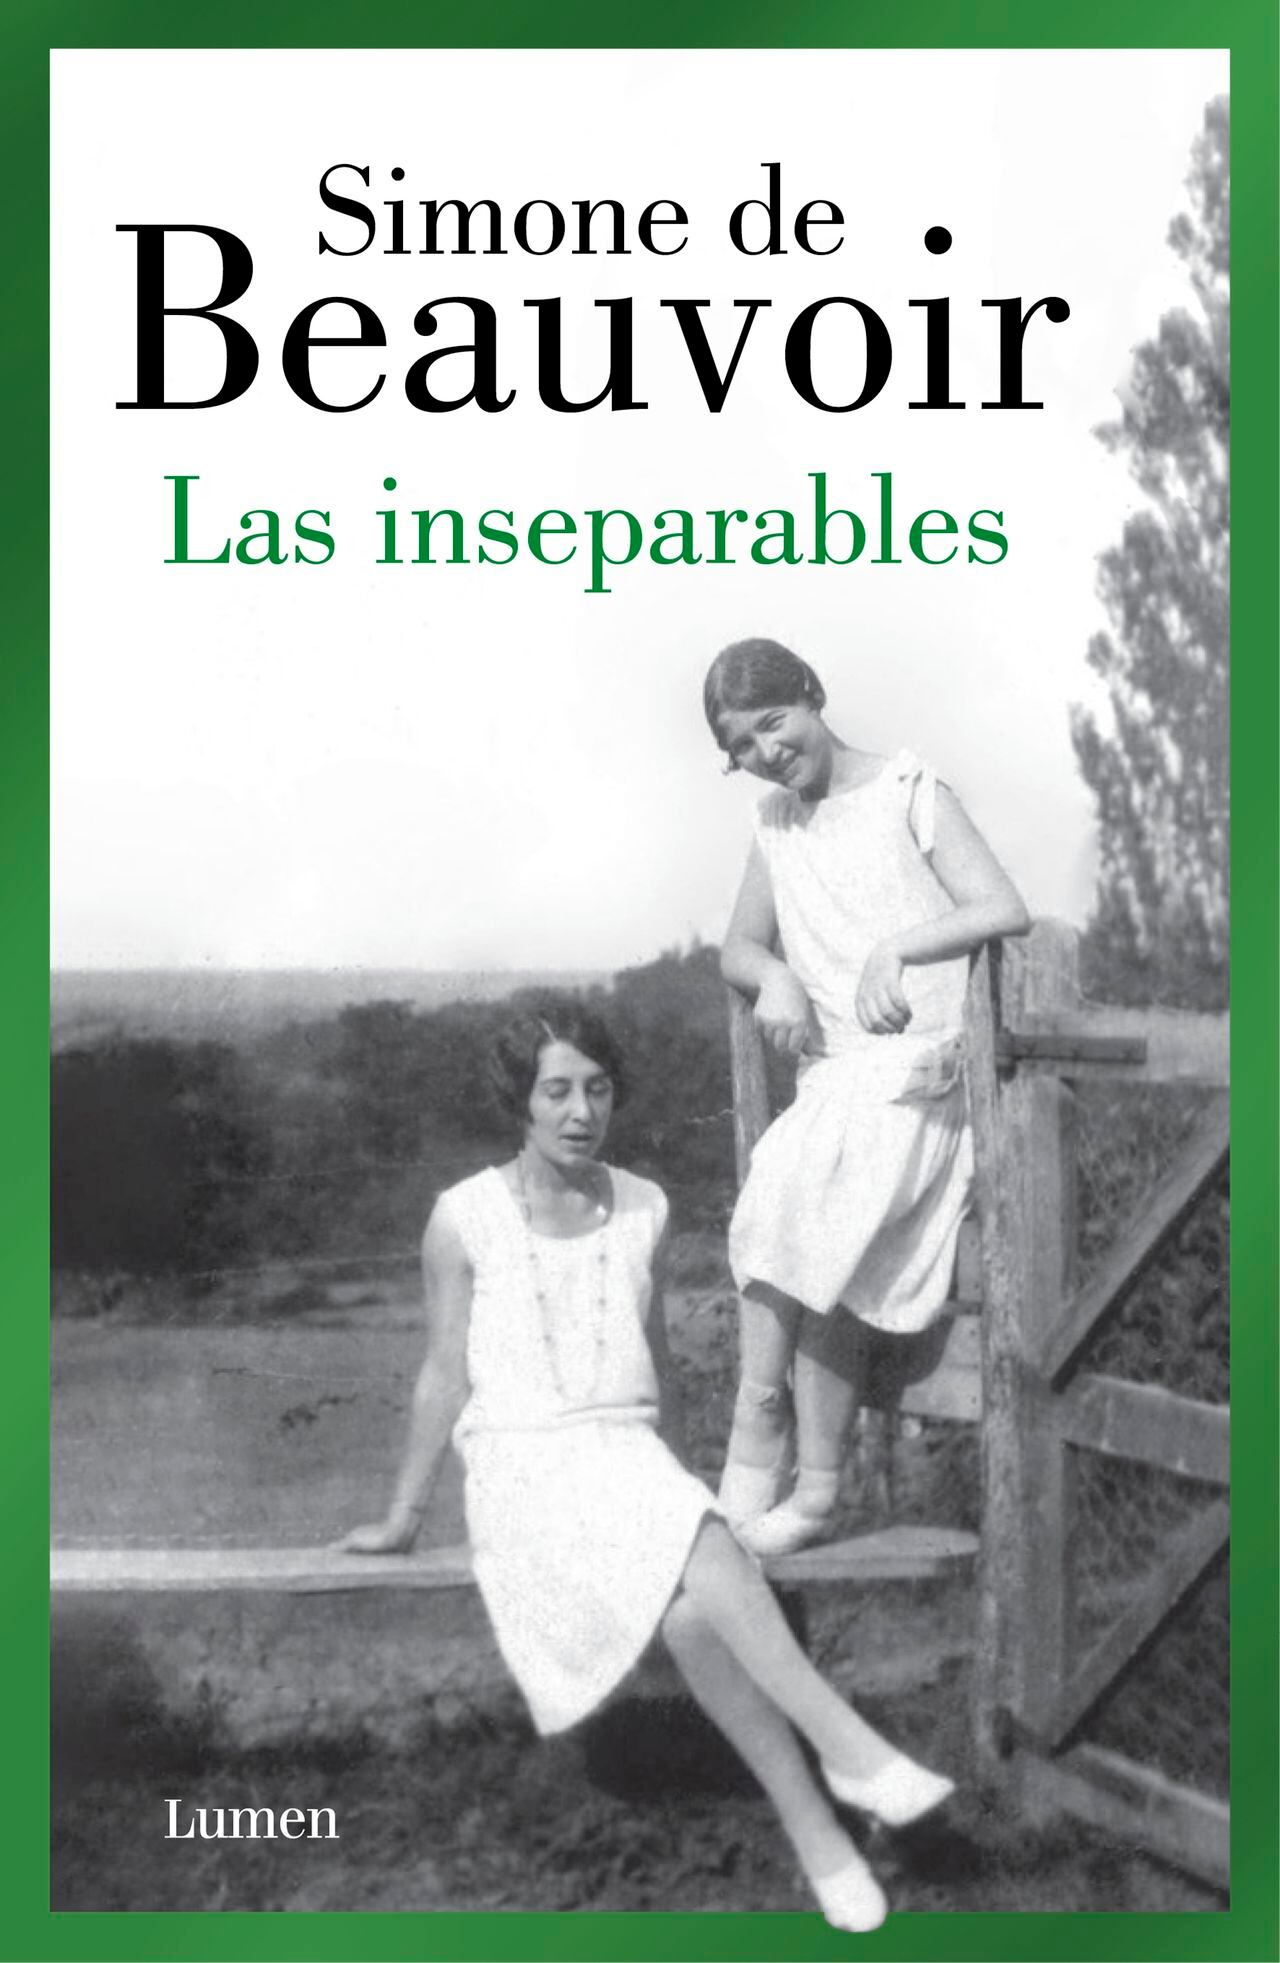 Portada de "Las inseparables" de Simone de Beauvoir. Cortesía de Penguin Random House.